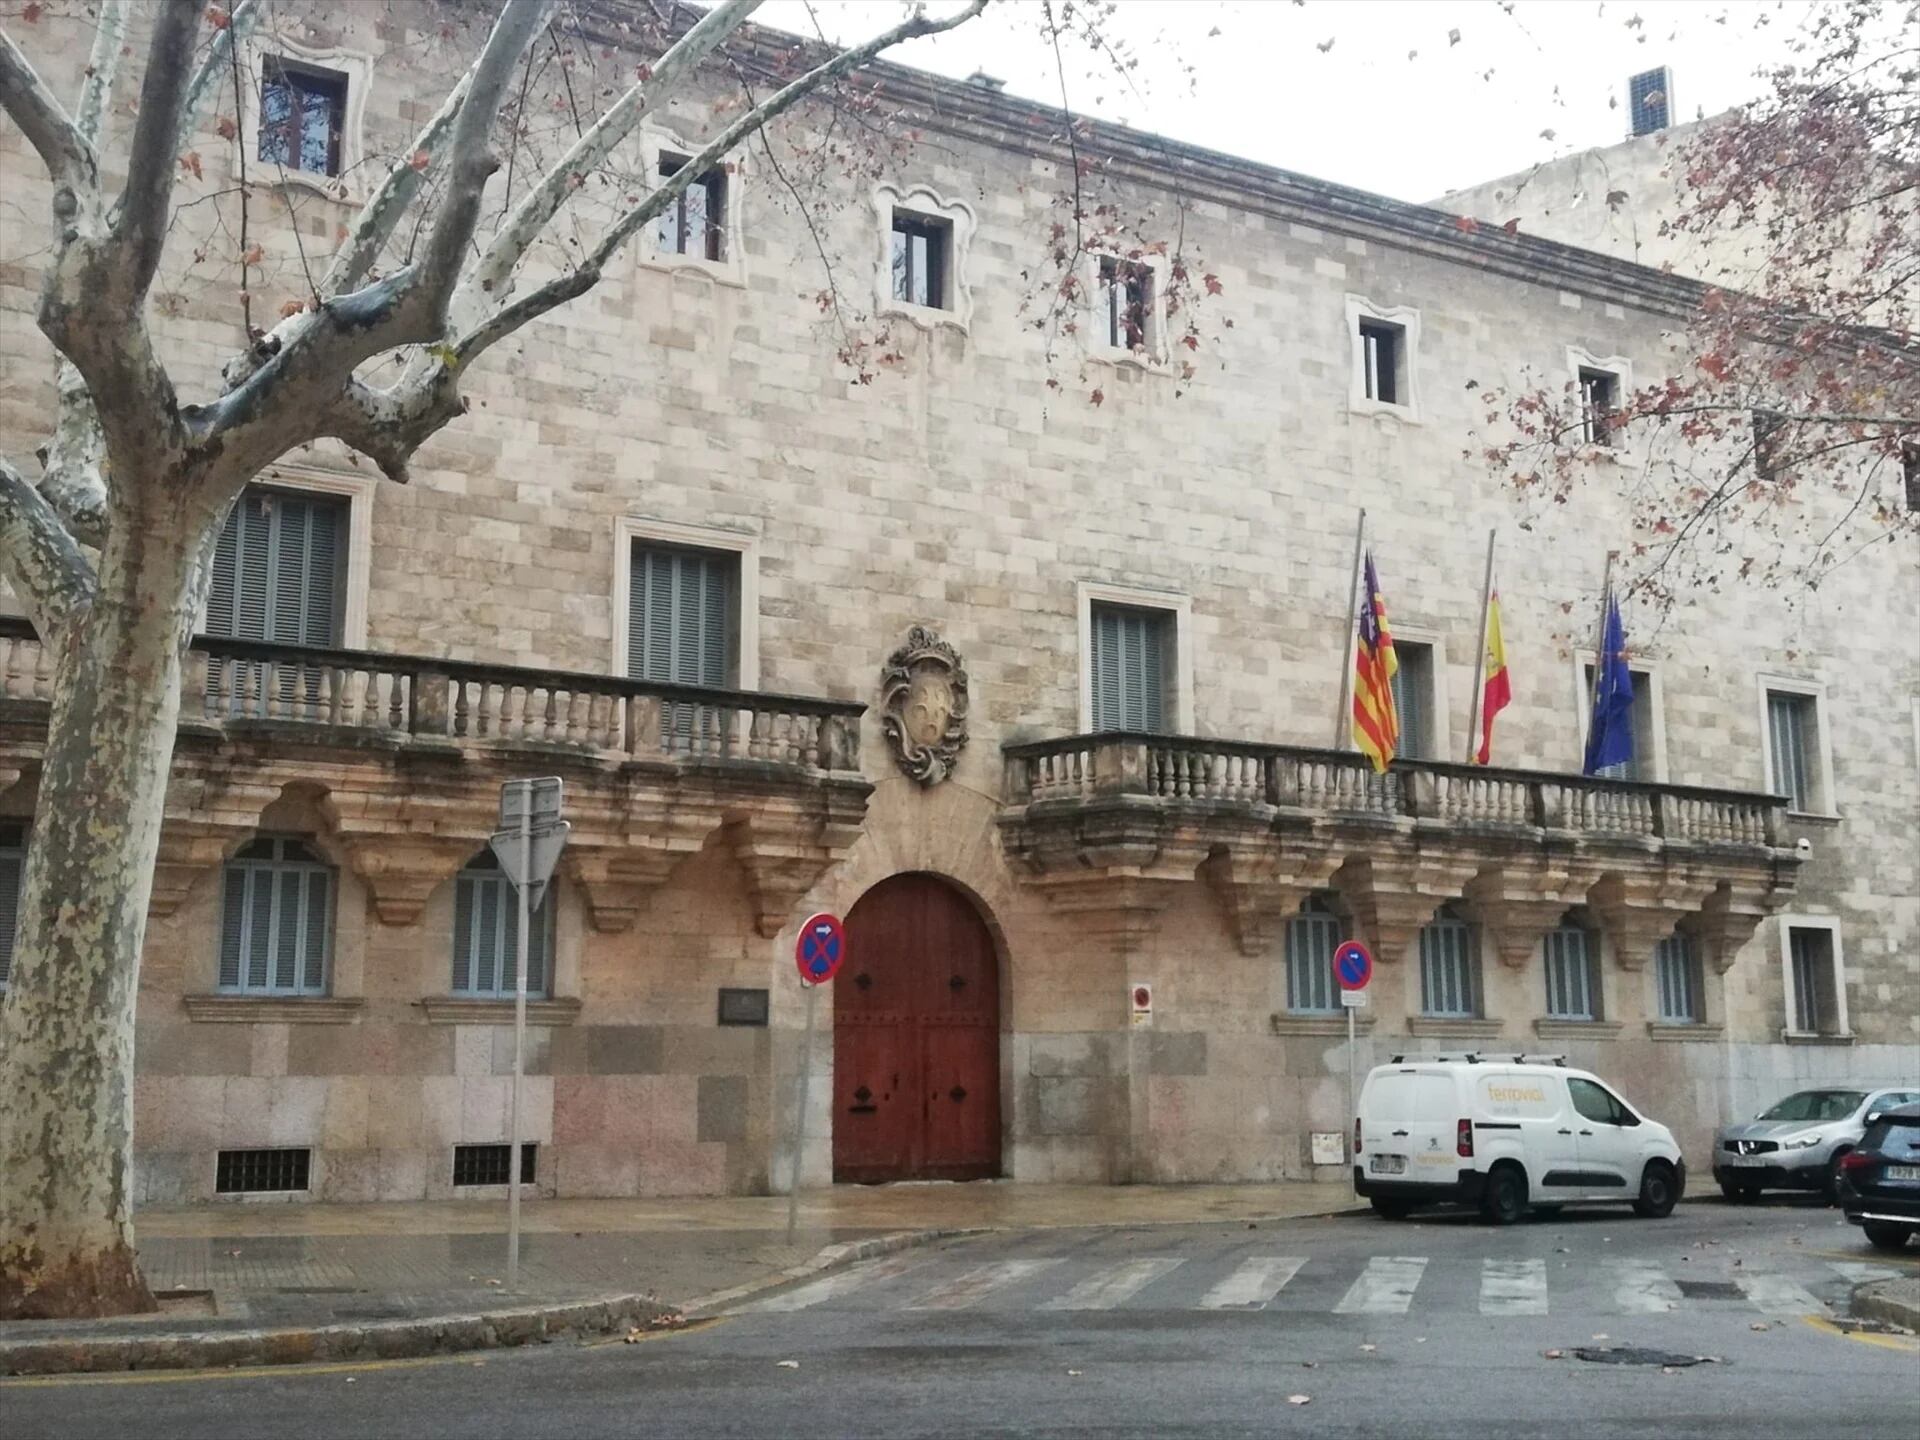 El Palacio de Justicia, sede del Tribunal Superior de Justicia de Baleares y la Audiencia Provincial, en la plaza Weyler de Palma. Foto de archivo.